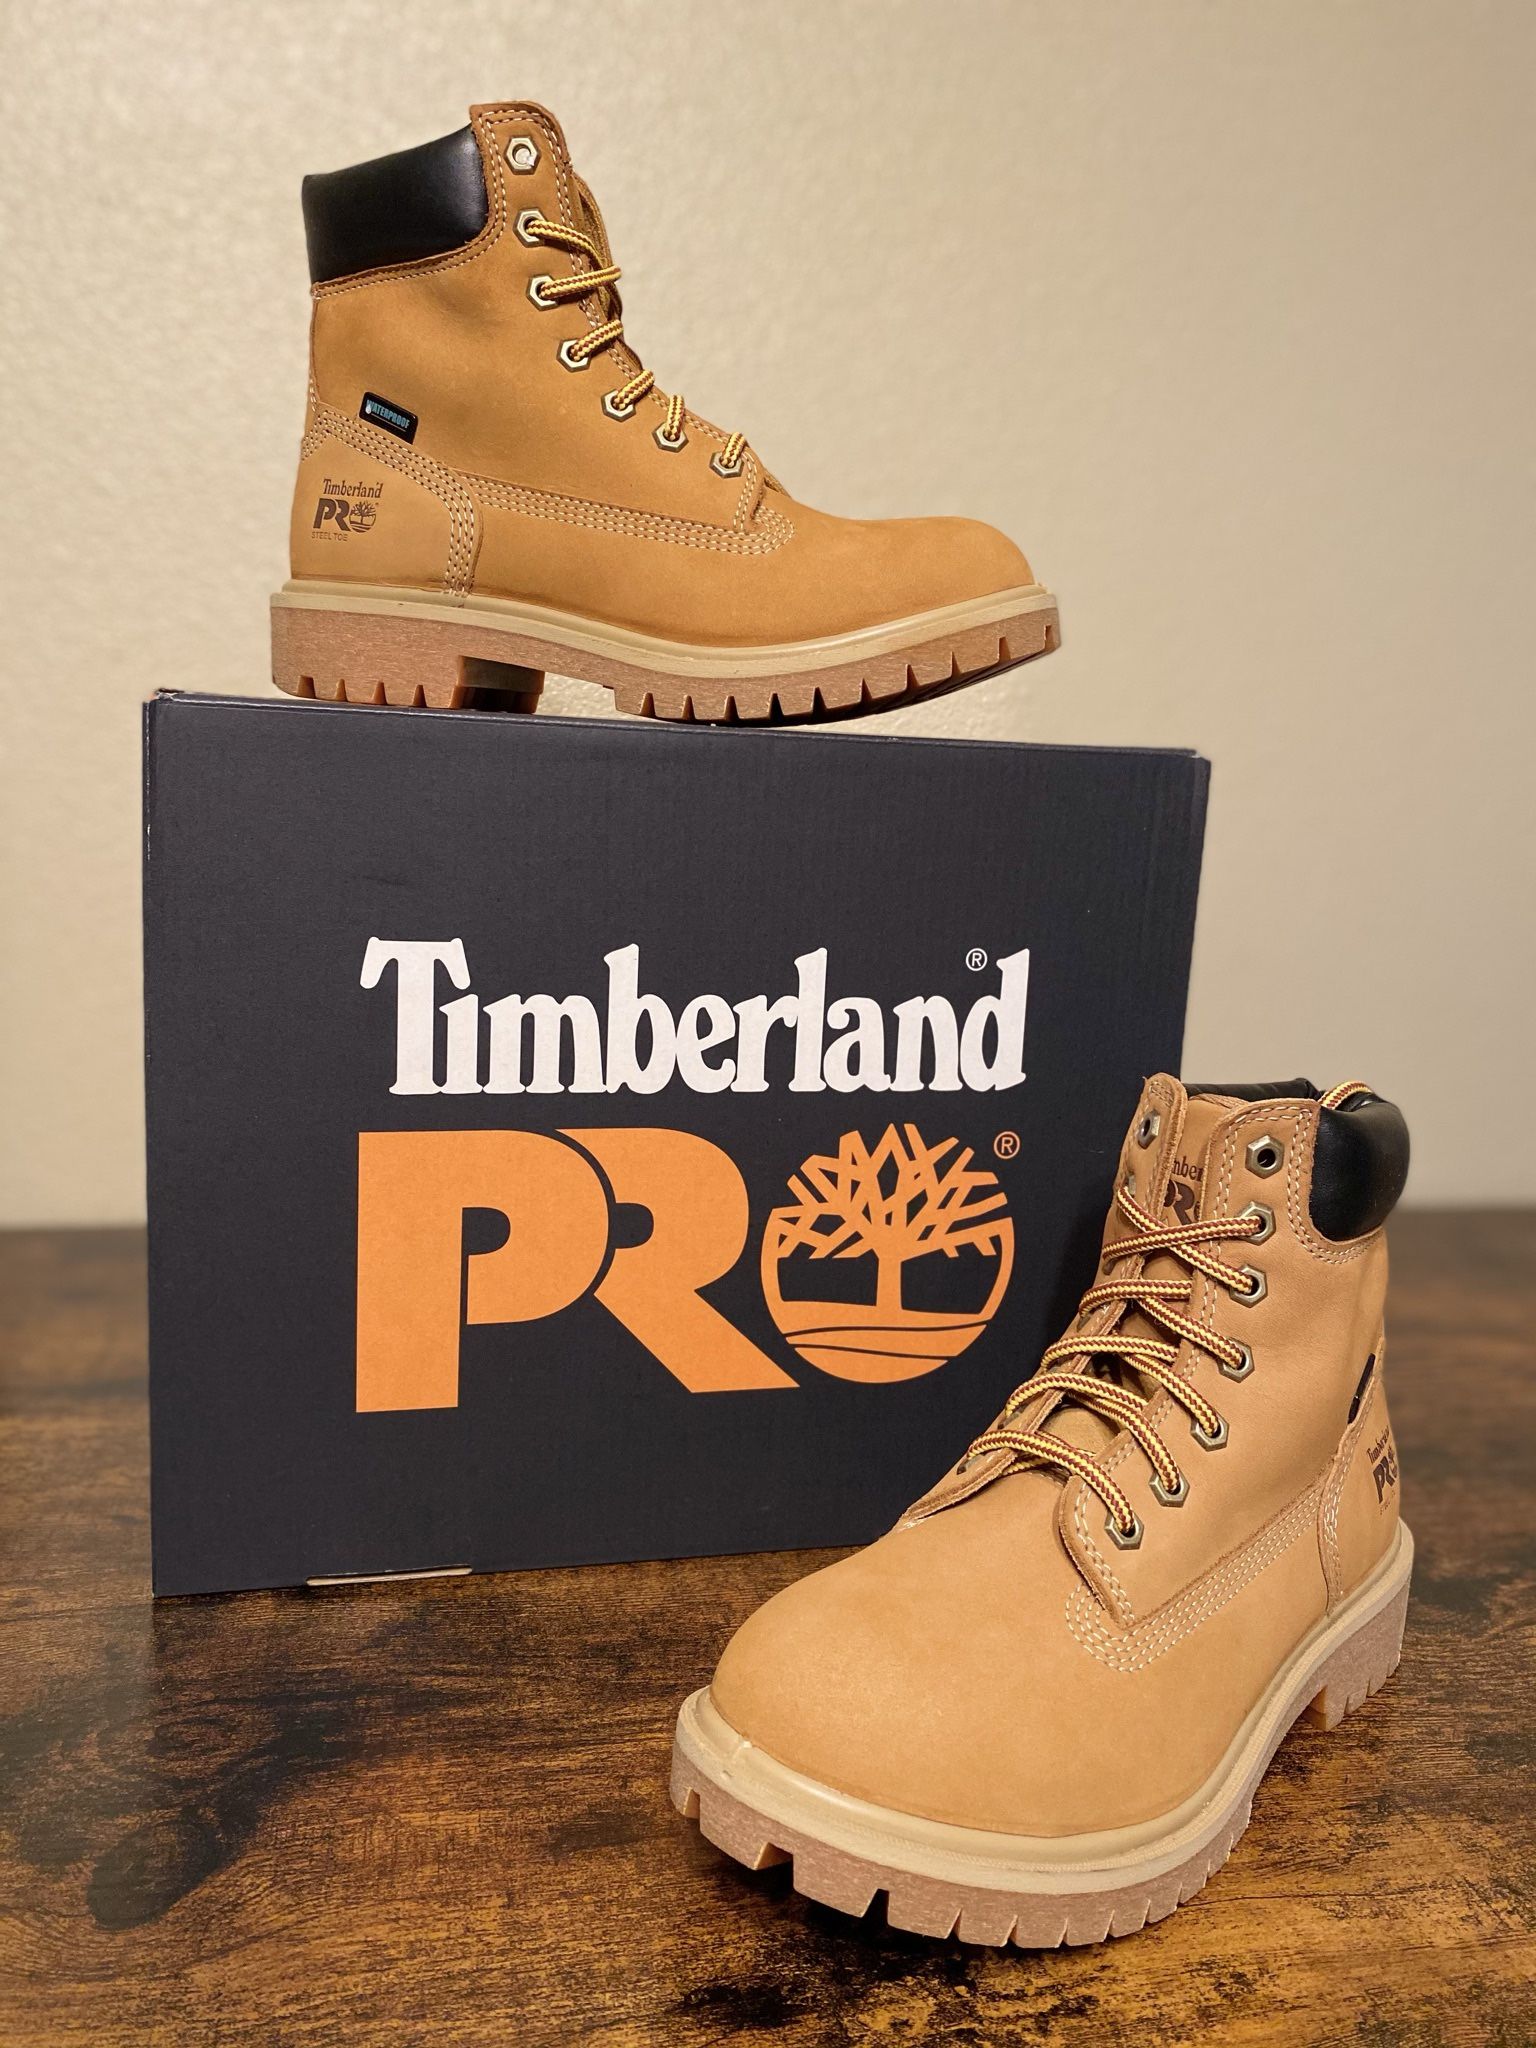 Timberland Pro Women’s Size 6